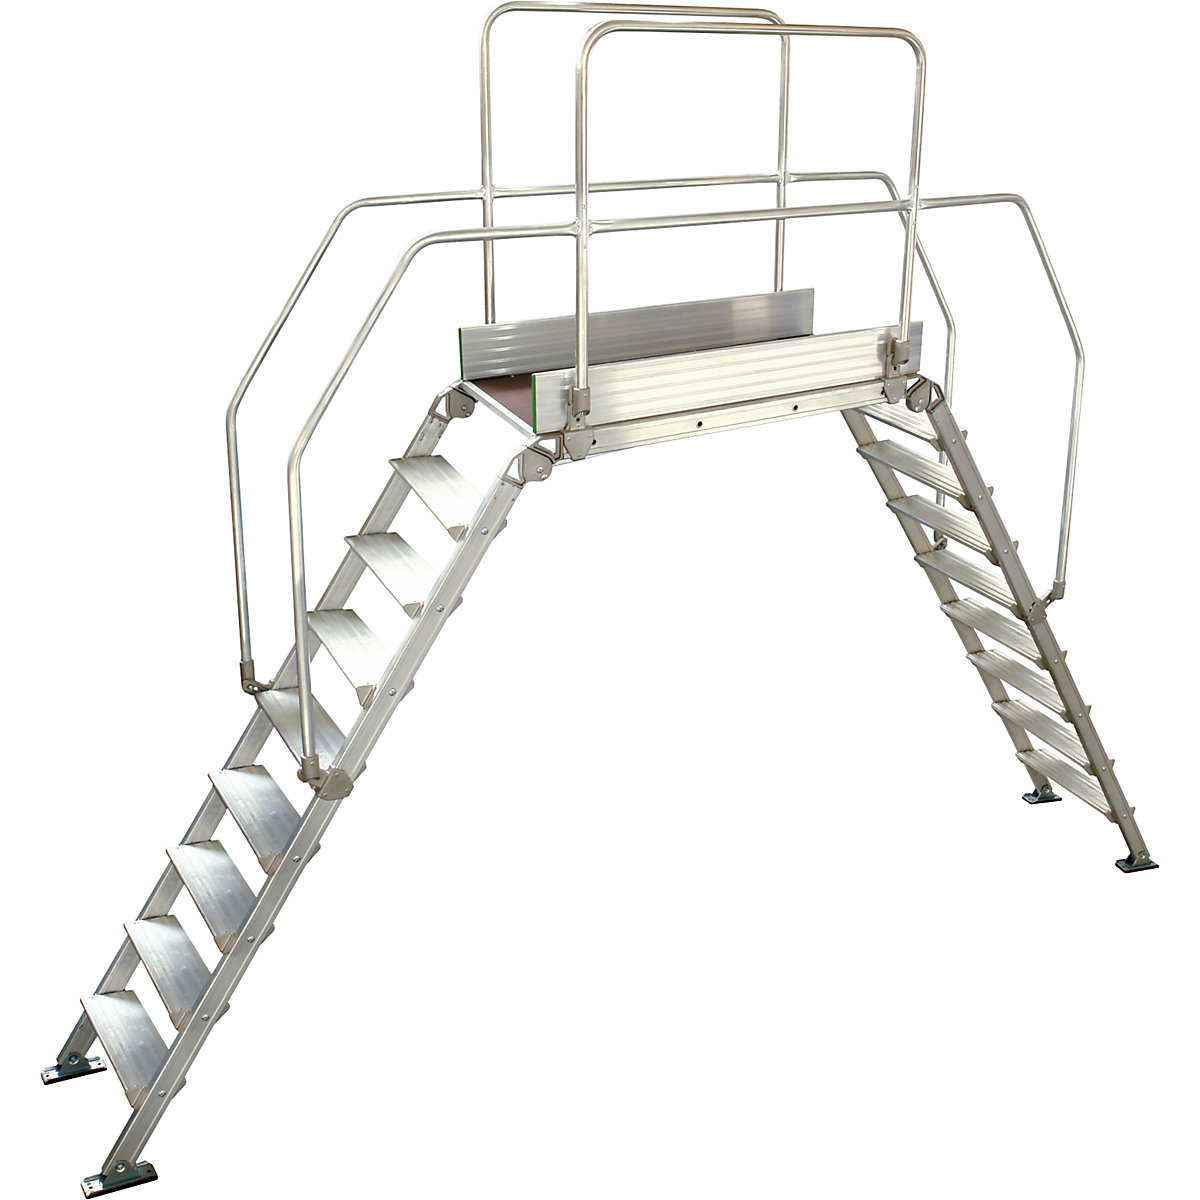 Aluminium ladderbrug, totale belasting 200 kg, 9 treden, platform 1200 x 530 mm-9